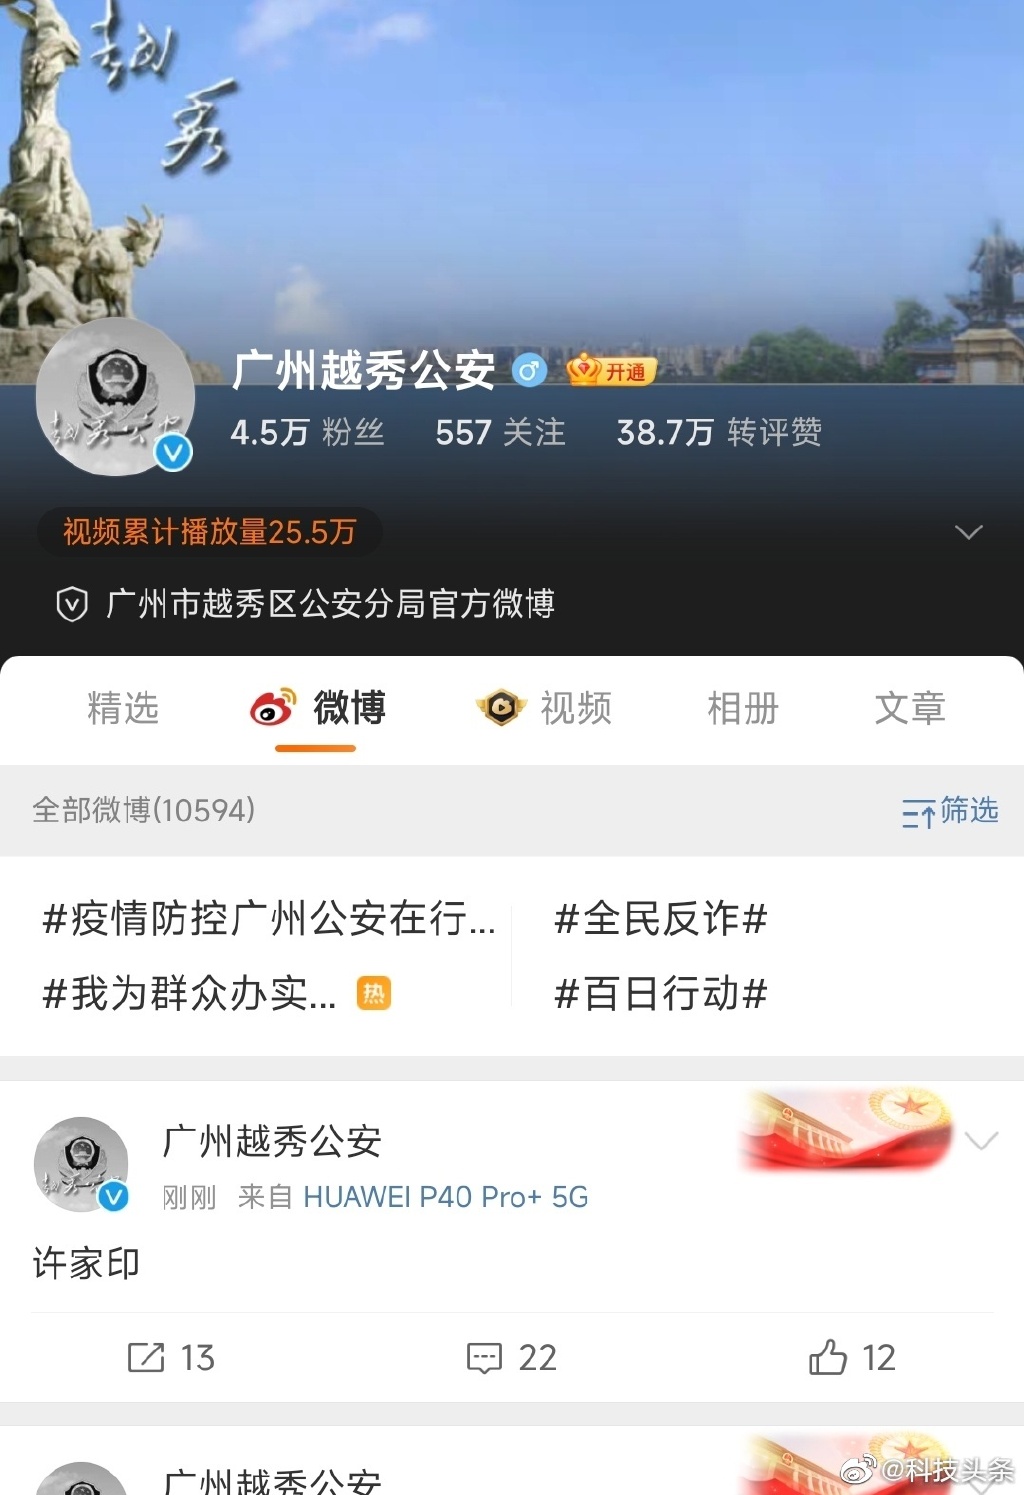 广州市越秀区公安分局官方微博午后发帖「许家印...」引发网民猜测，该帖随即删除